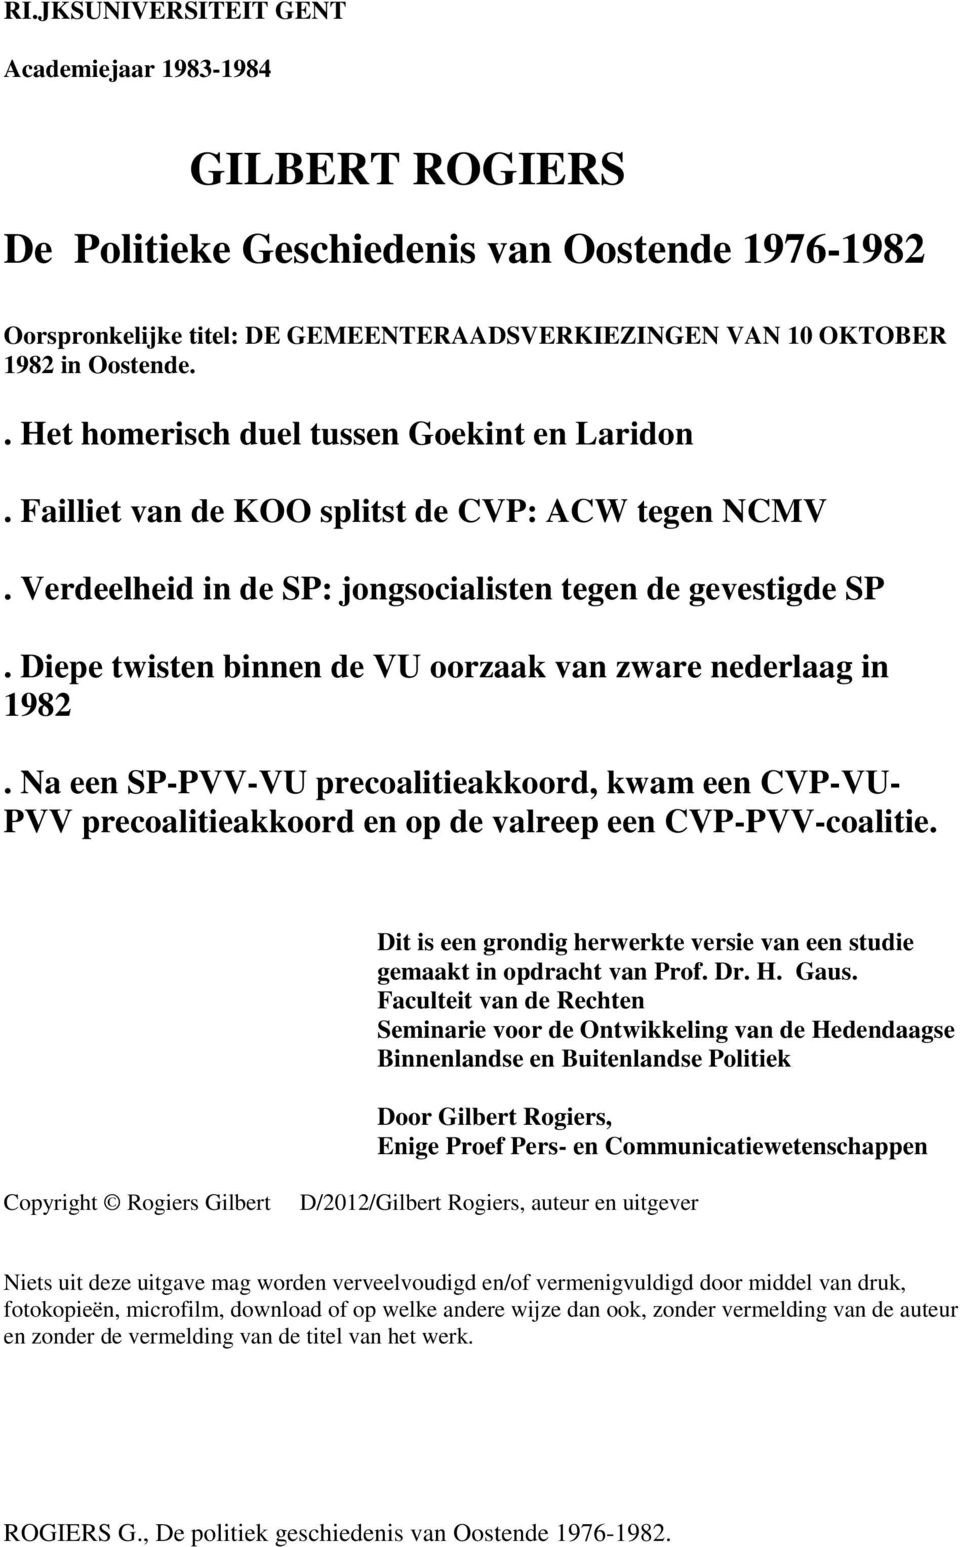 Diepe twisten binnen de VU oorzaak van zware nederlaag in 1982. Na een SP-PVV-VU precoalitieakkoord, kwam een CVP-VU- PVV precoalitieakkoord en op de valreep een CVP-PVV-coalitie.